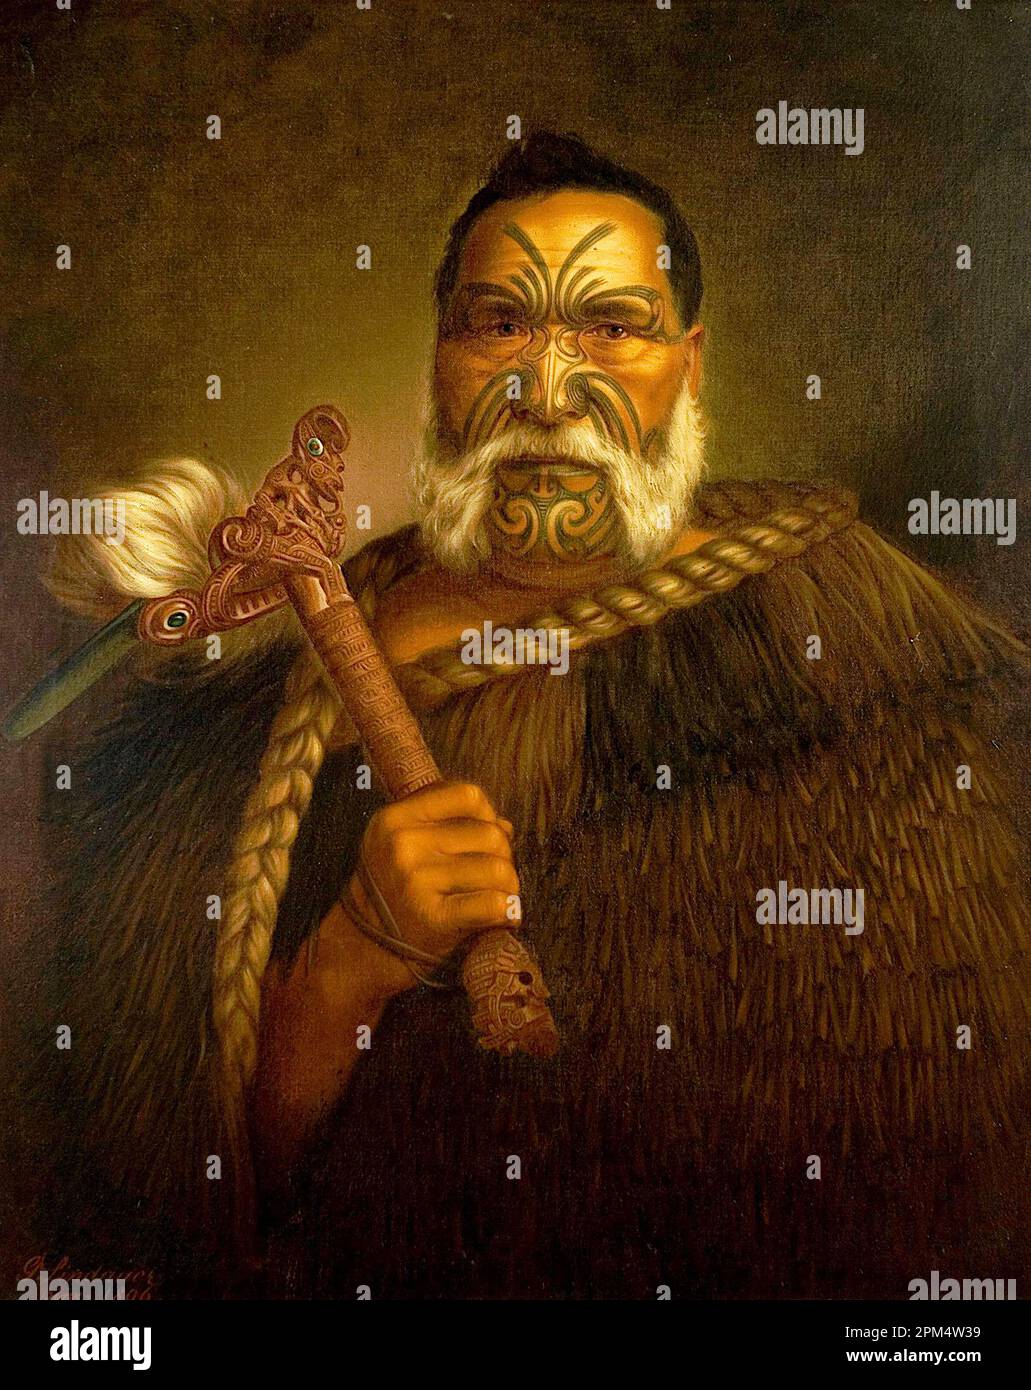 Gottfried Lindauer - Heta te Haara - Ritratto del capo Maori. Foto Stock